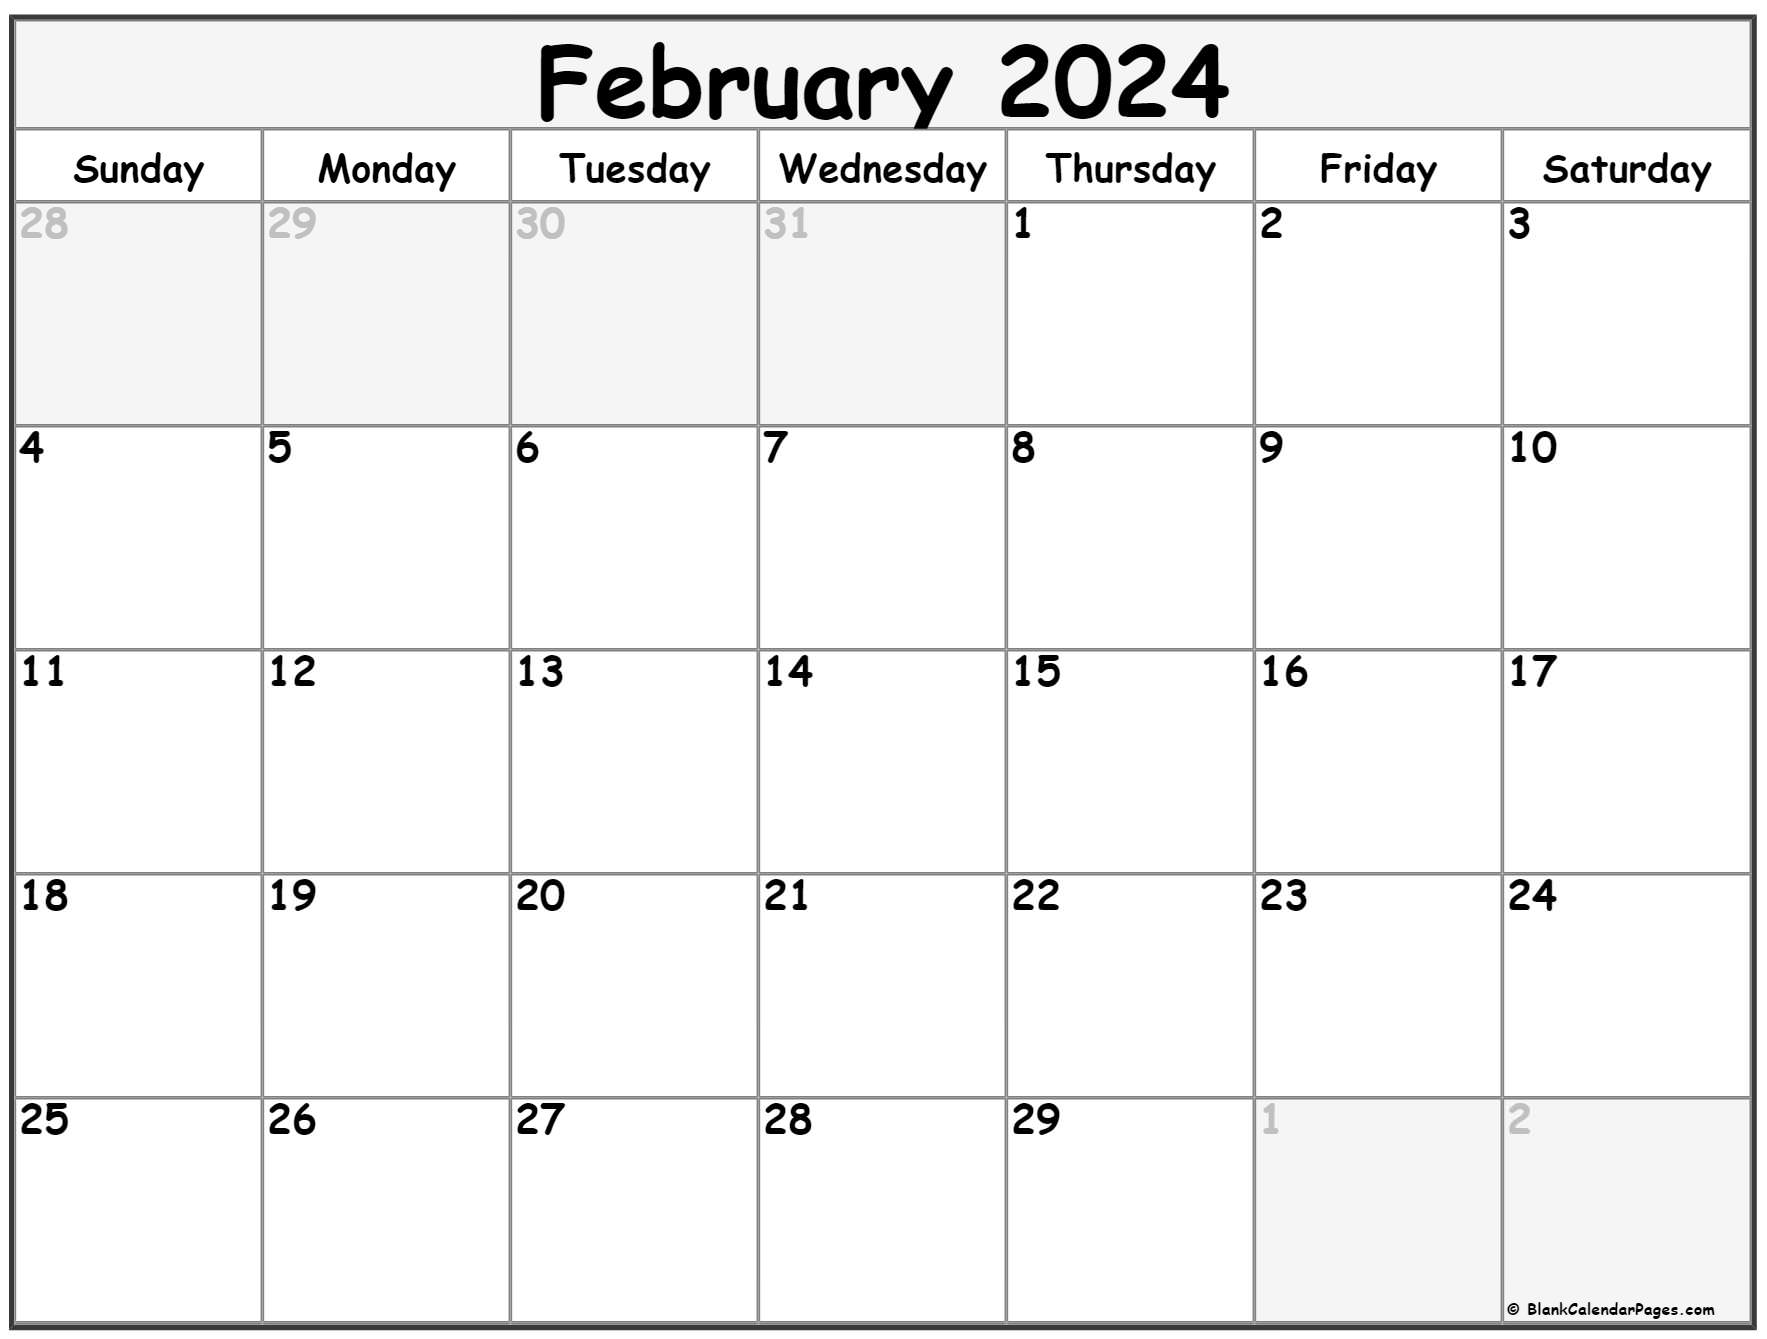 February 2023 Calendar Free Printable Calendar February 2023 Calendar 